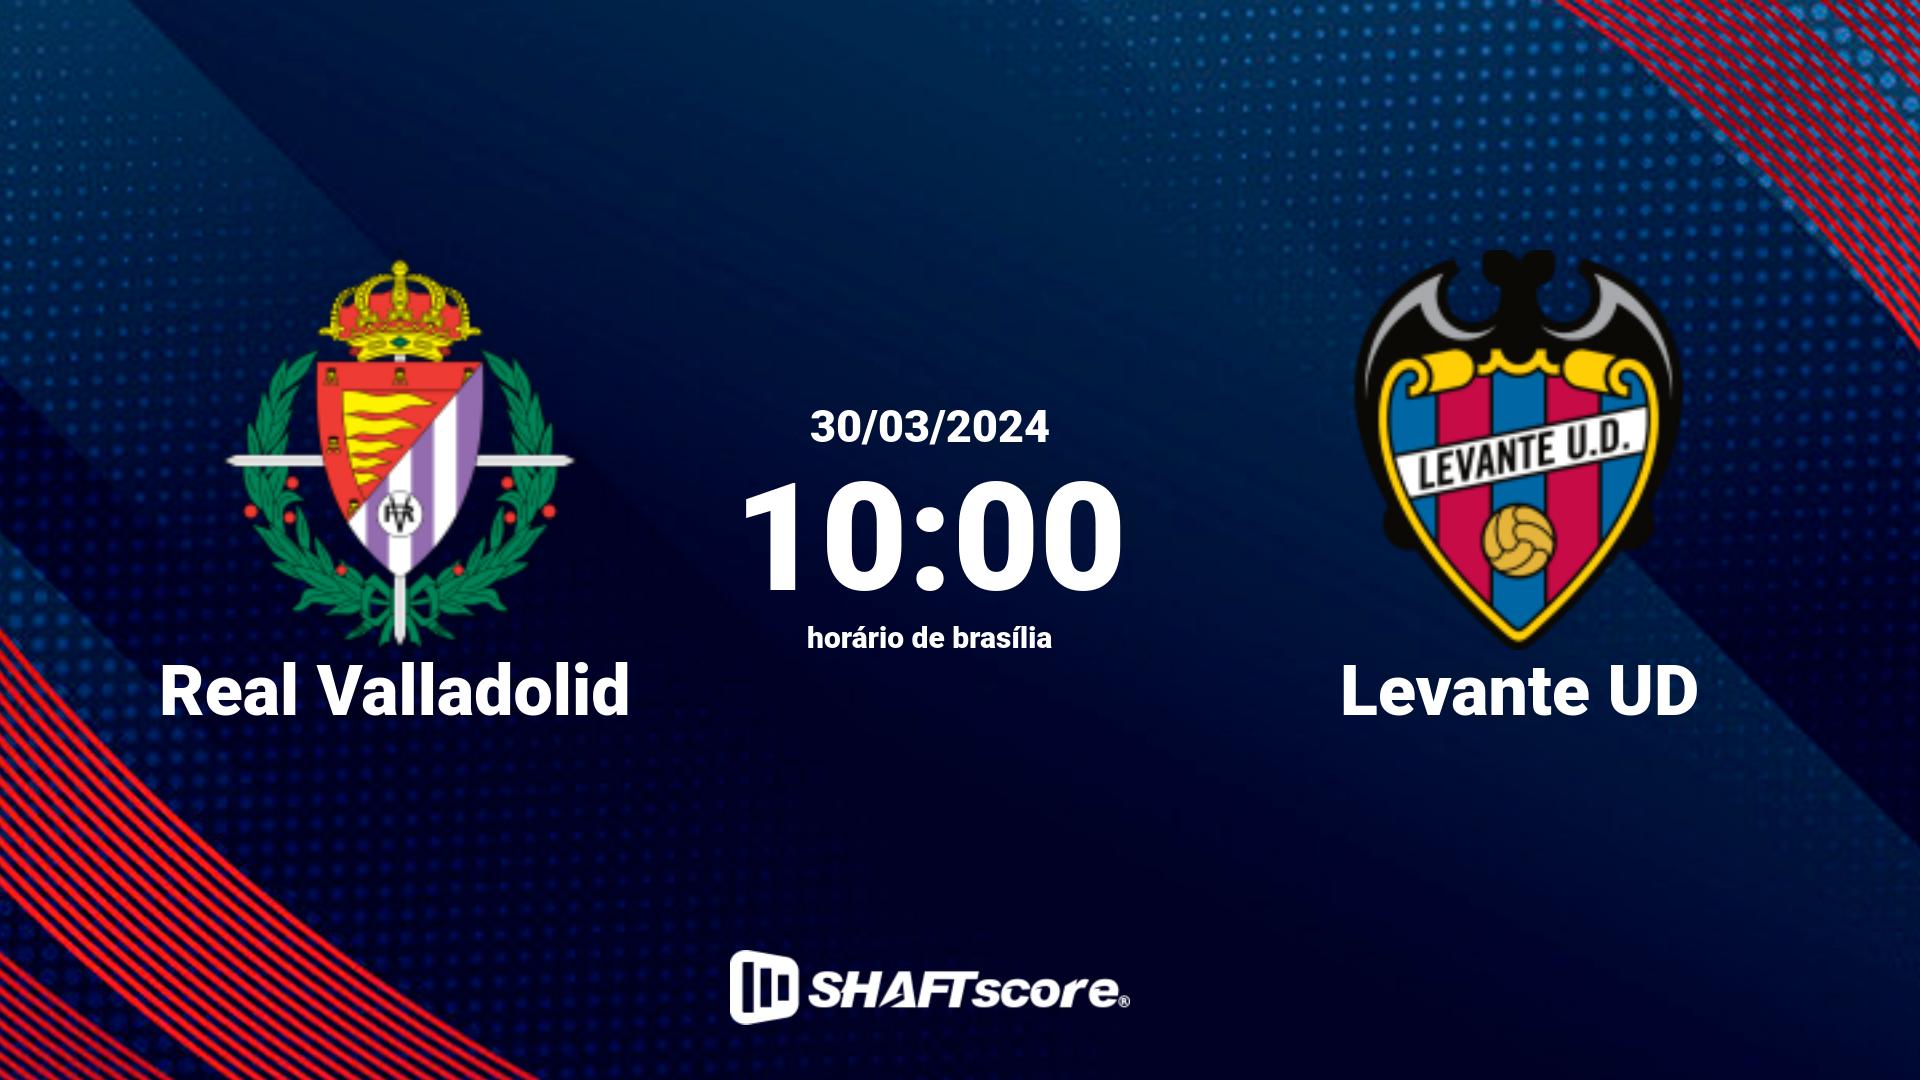 Estatísticas do jogo Real Valladolid vs Levante UD 30.03 10:00